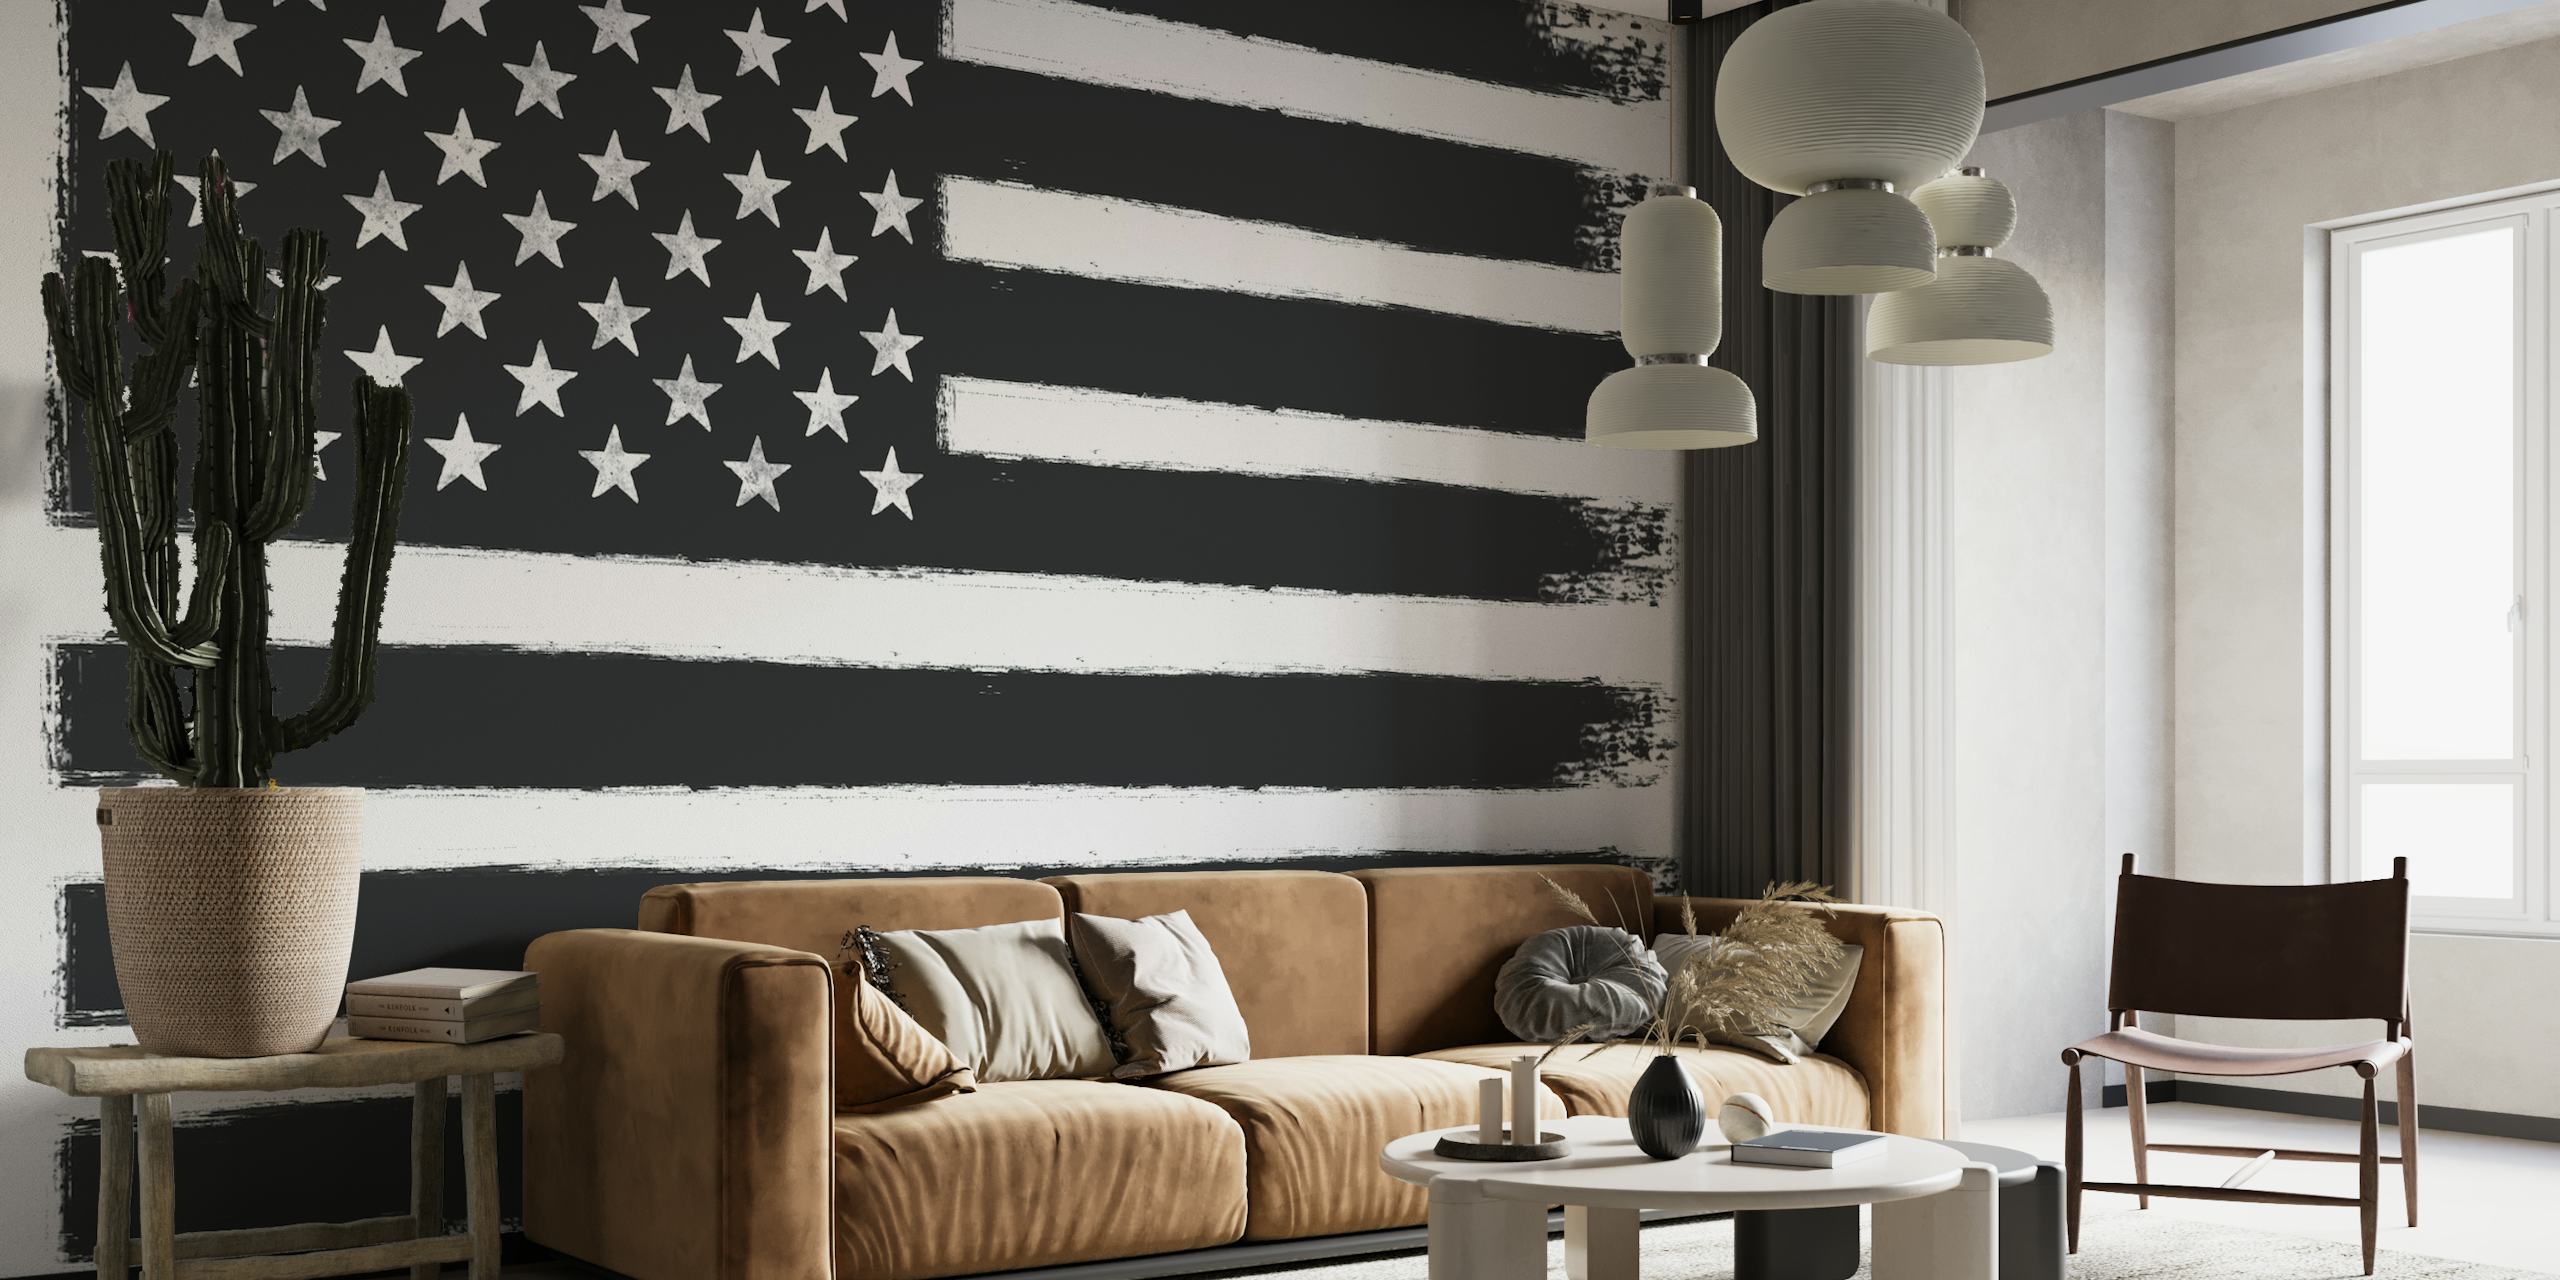 USA flag i sort og hvid som vægmaleri